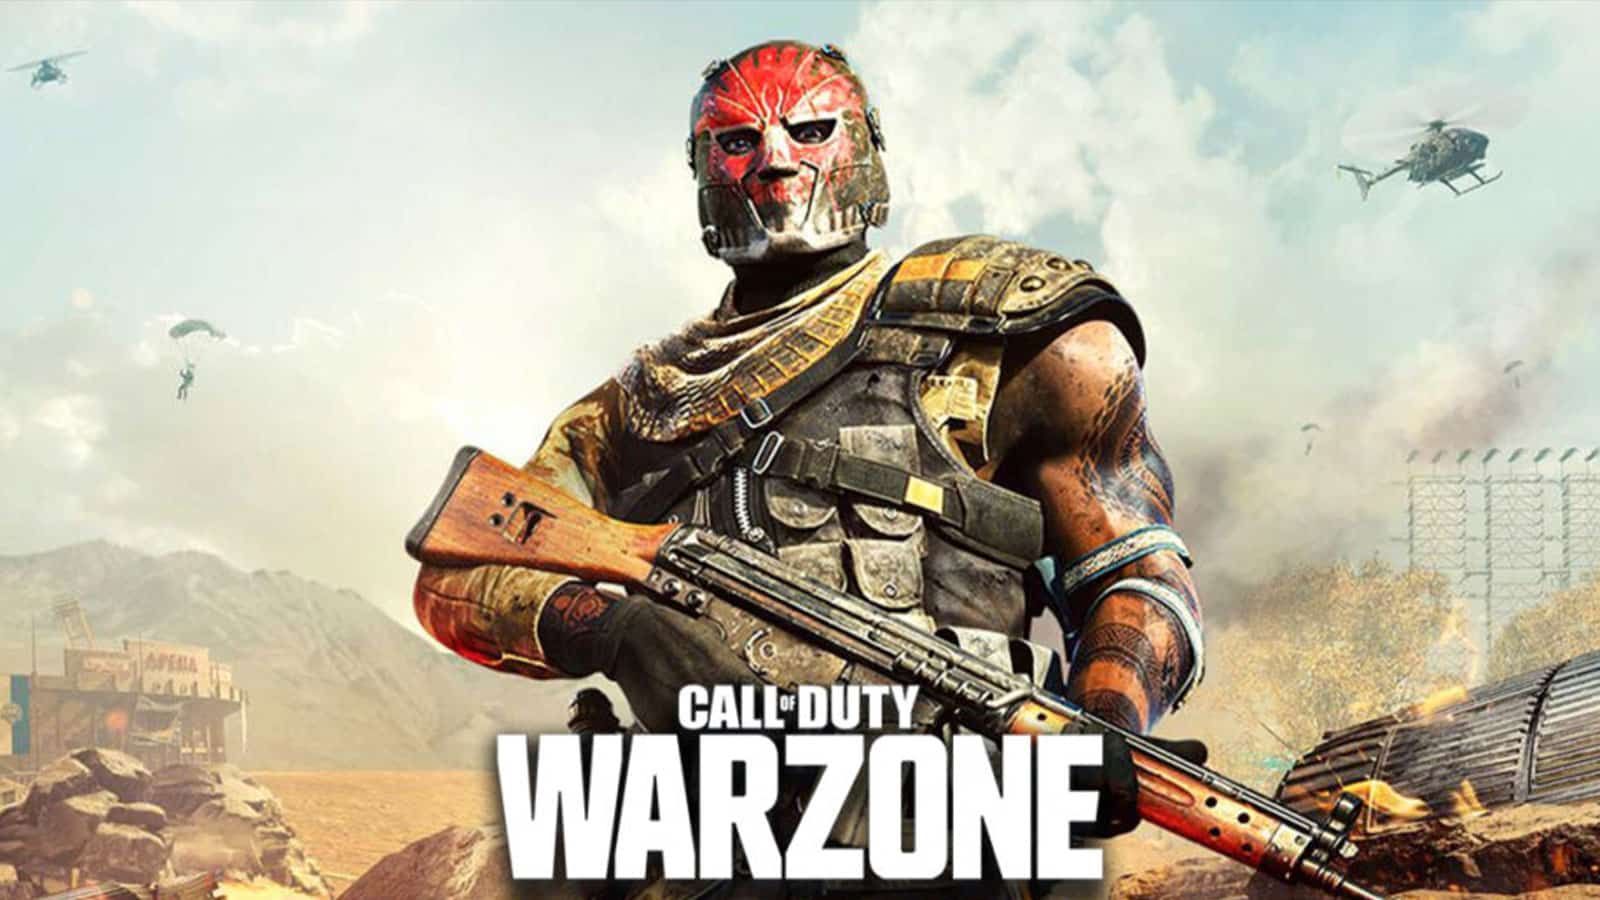 Les joueurs de Warzone insistent sur une mécanique de Battlefield pour contrer la triche